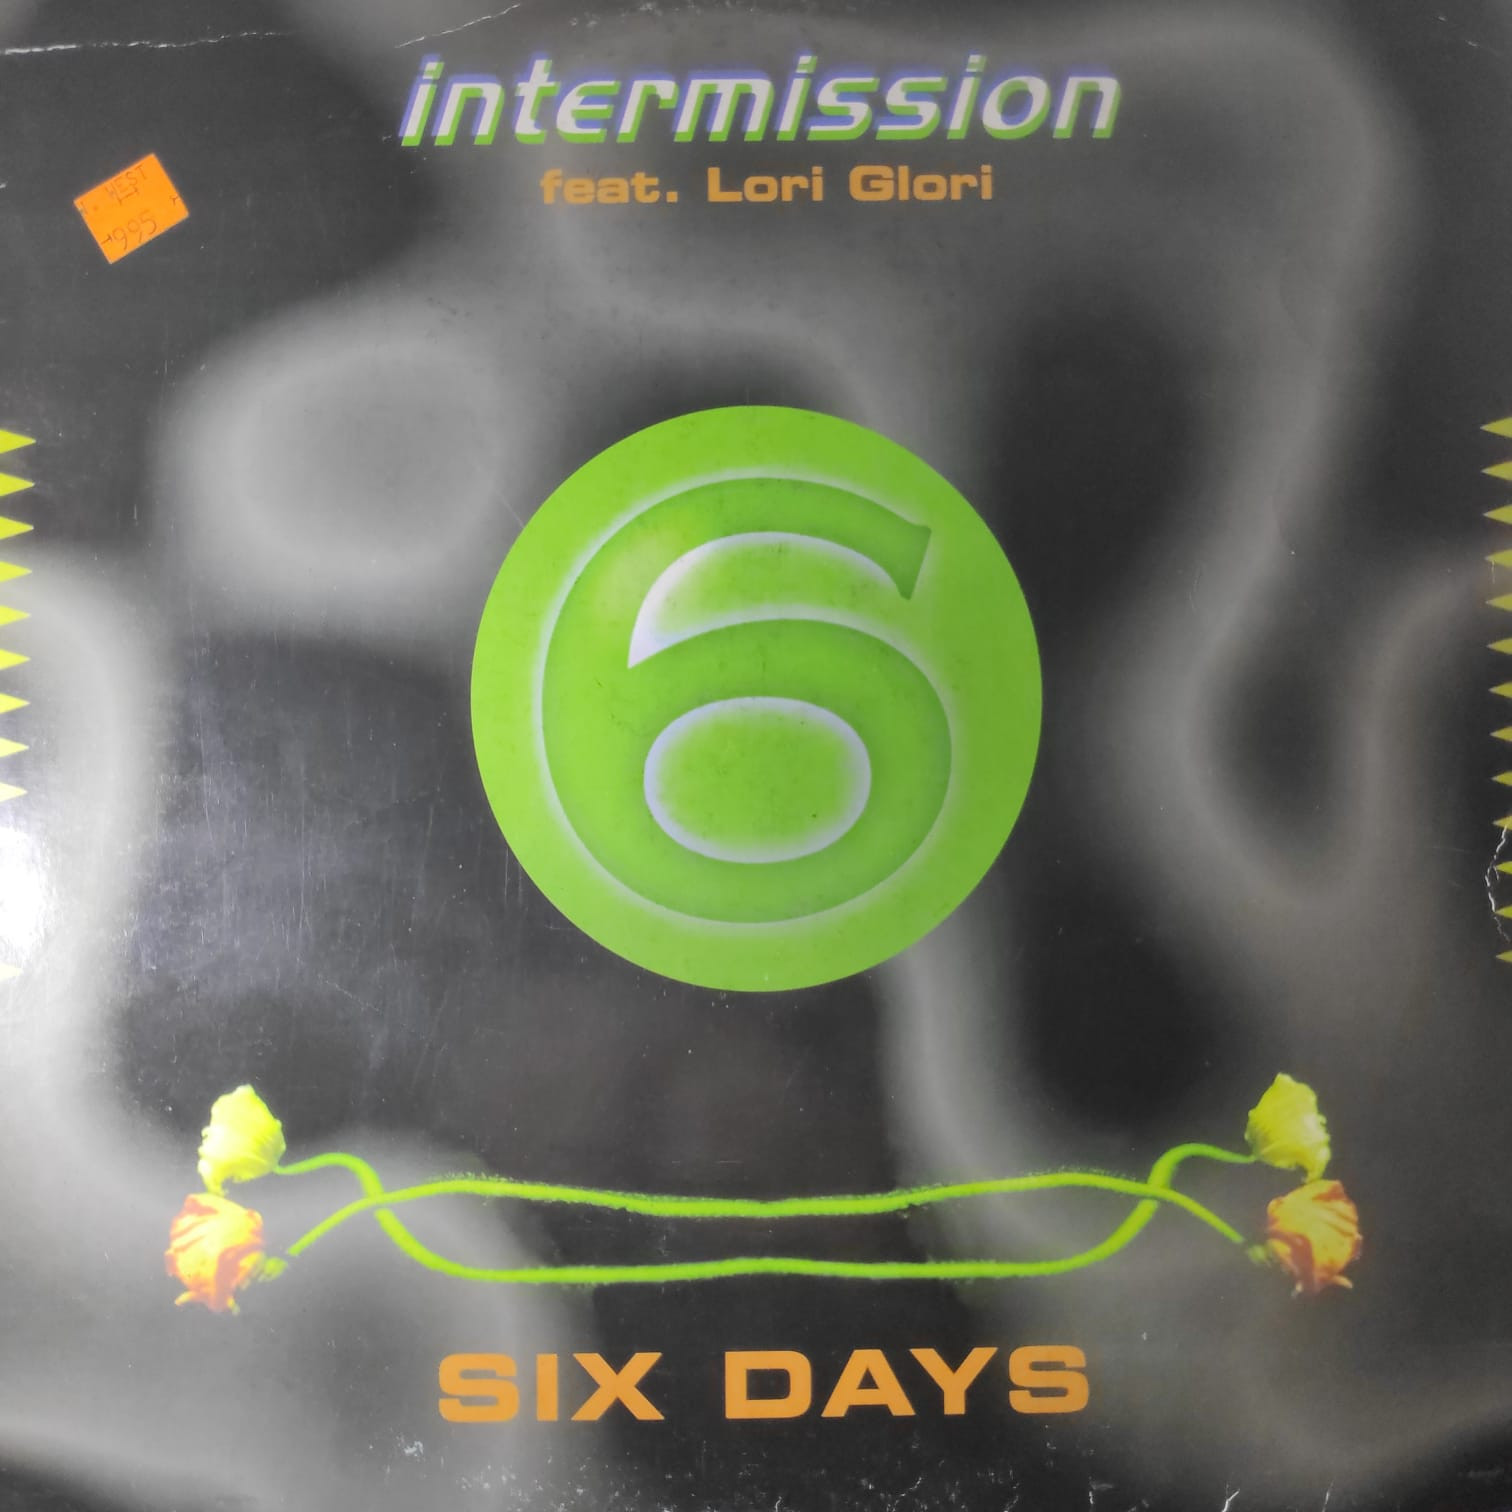 (JR1575) Intermission Feat. Lori Glori ‎– Six Days